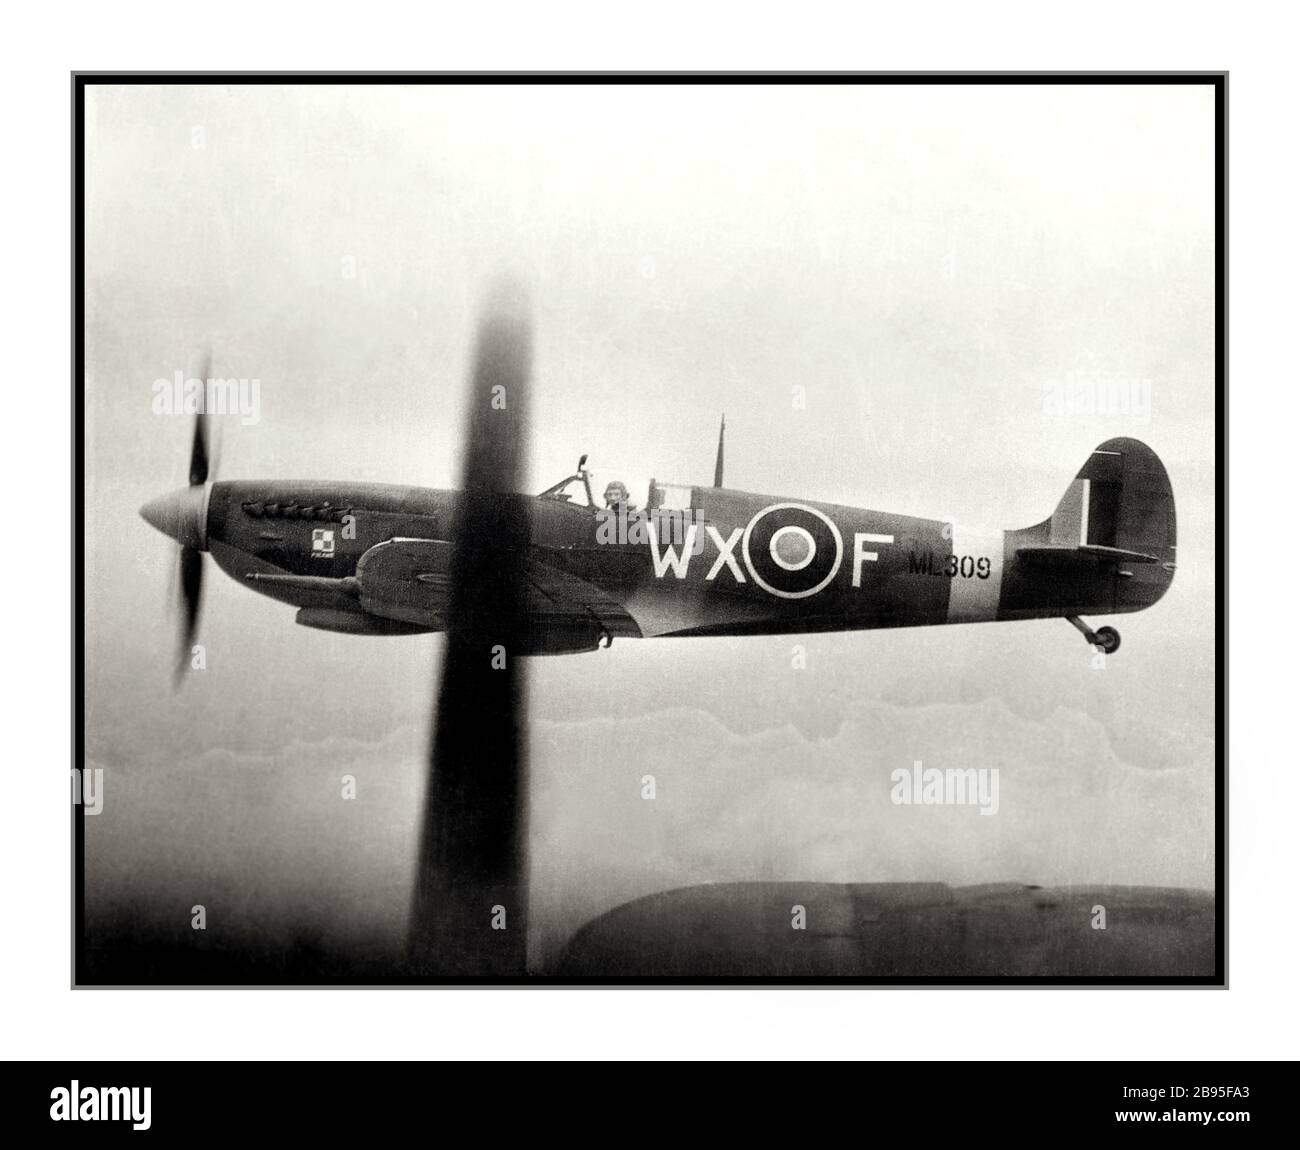 SPITFIRE WW2 1940'S World War II Royal Air Force (RAF) Spitfire fuori l'ala di un americano Airforce B-17. Volato dai piloti RAF, lo Spitfire a breve distanza era quello dell'USAAF e Bombardieri comandava una pesante scorta di bombardieri che proteggeva contro gli aerei da combattimento nazisti della Germania fino alla metà del 1943. Seconda guerra mondiale WW2 Foto Stock